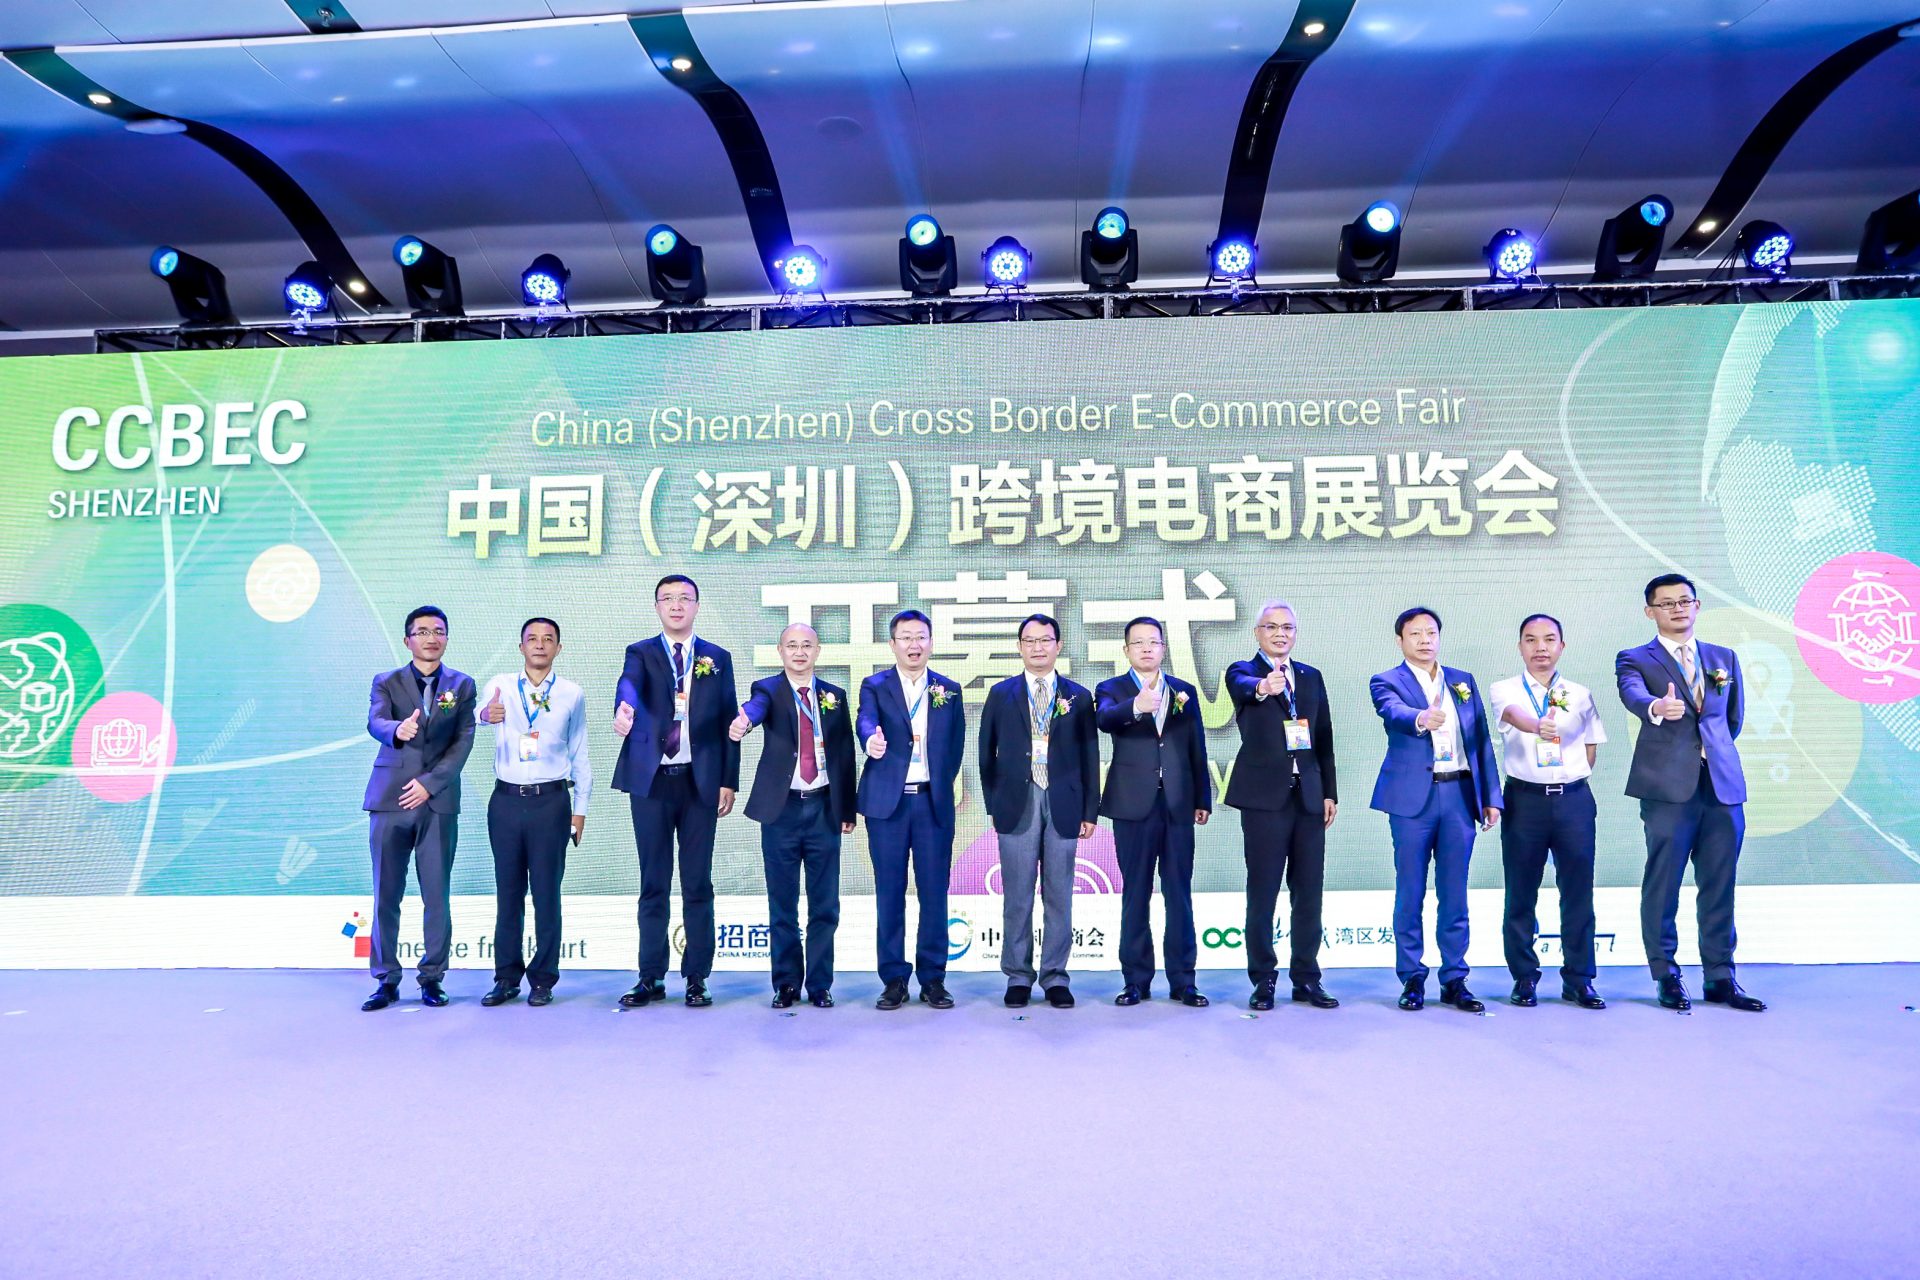 战略合作 | DNY123 邀您共赴跨境电商年度大展--CCBEC中国（深圳）跨境电商展览会（春季）